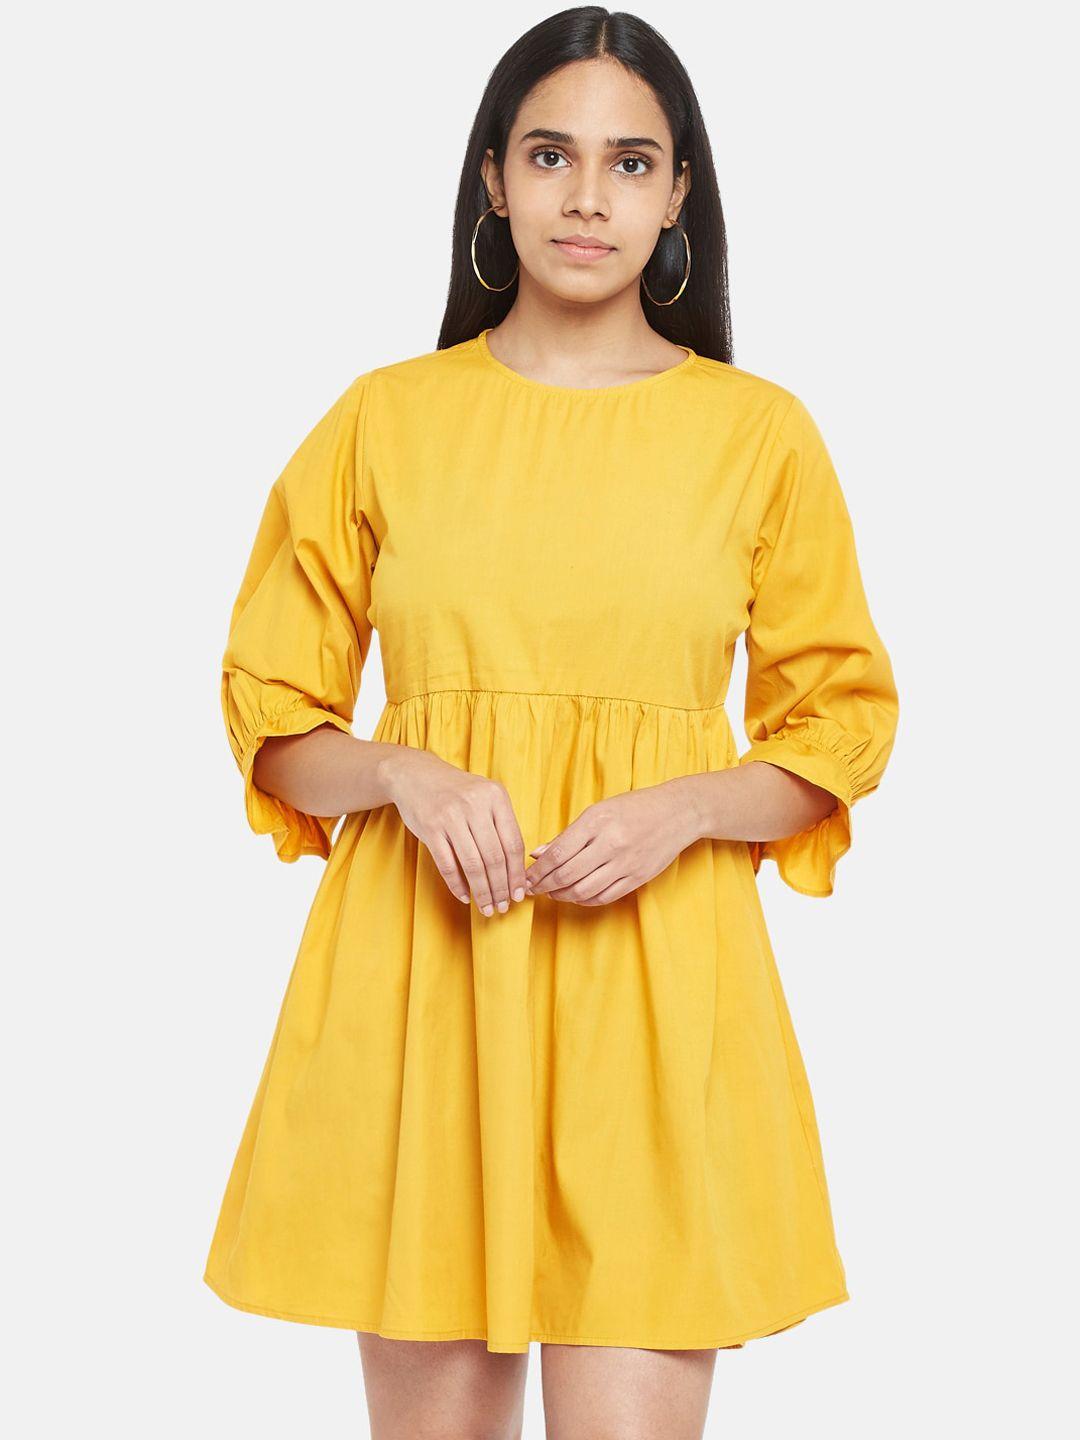 people-woman-mustard-yellow-dress